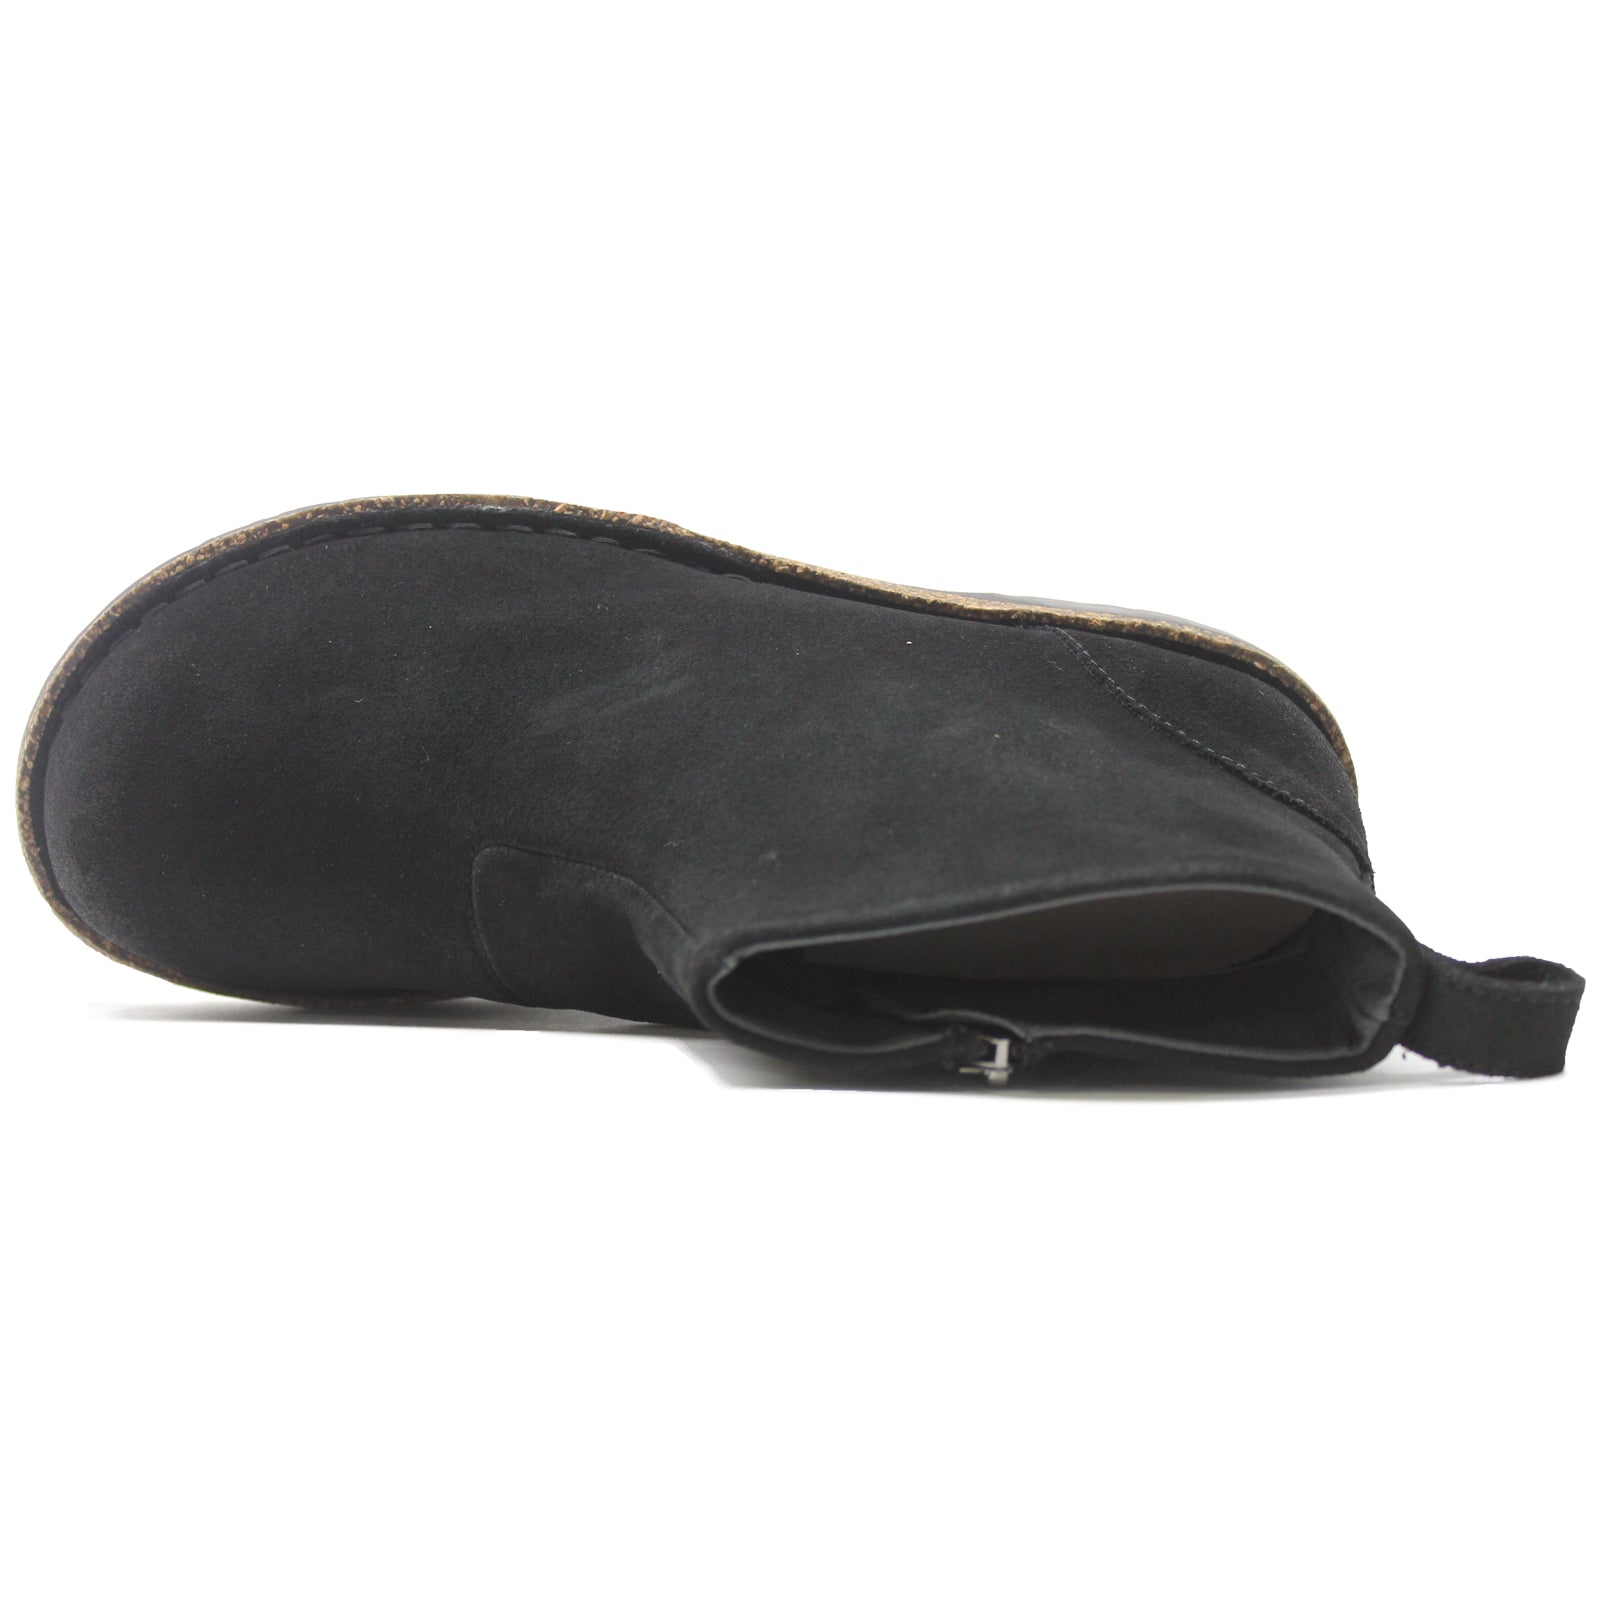 Birkenstock Melrose Suede Unisex Boots#color_black